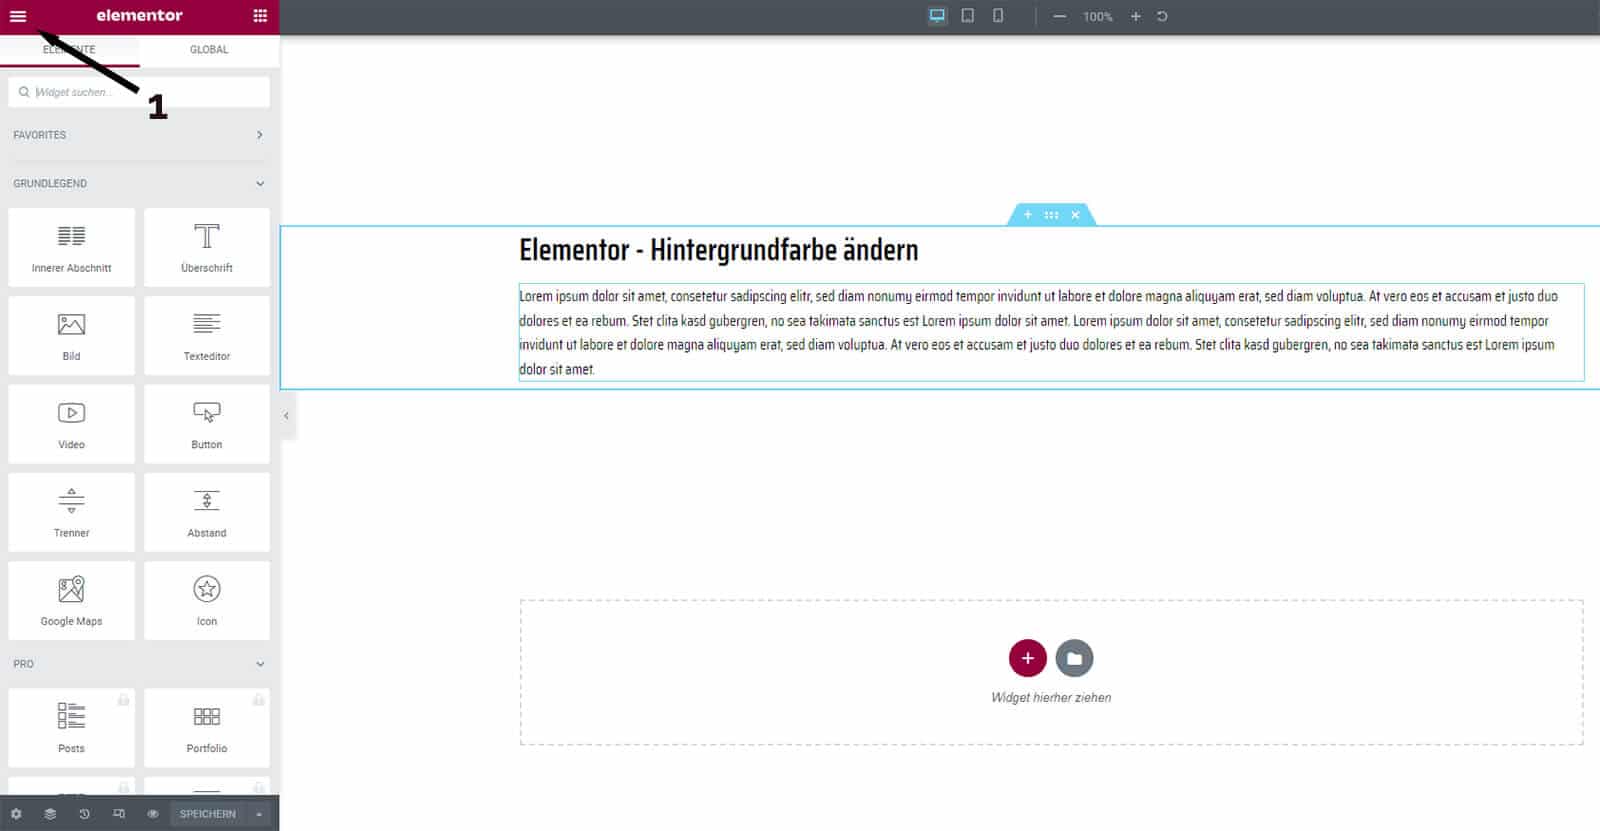 Elementor - Hintergrundfarbe ändern in den Website Einstellungen